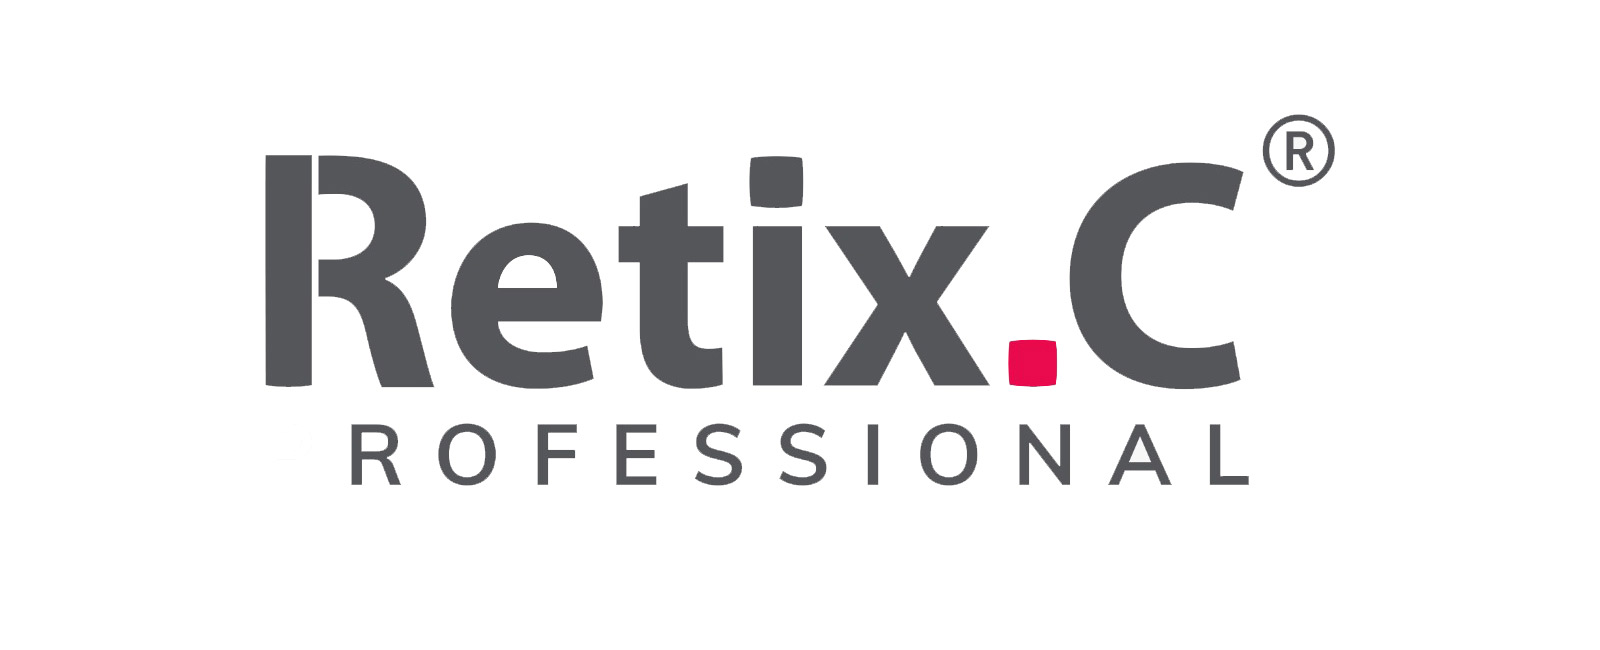 Descubre Retix.c, el innovador tratamiento que ofrece el Doctor Franco Góngora en Madrid